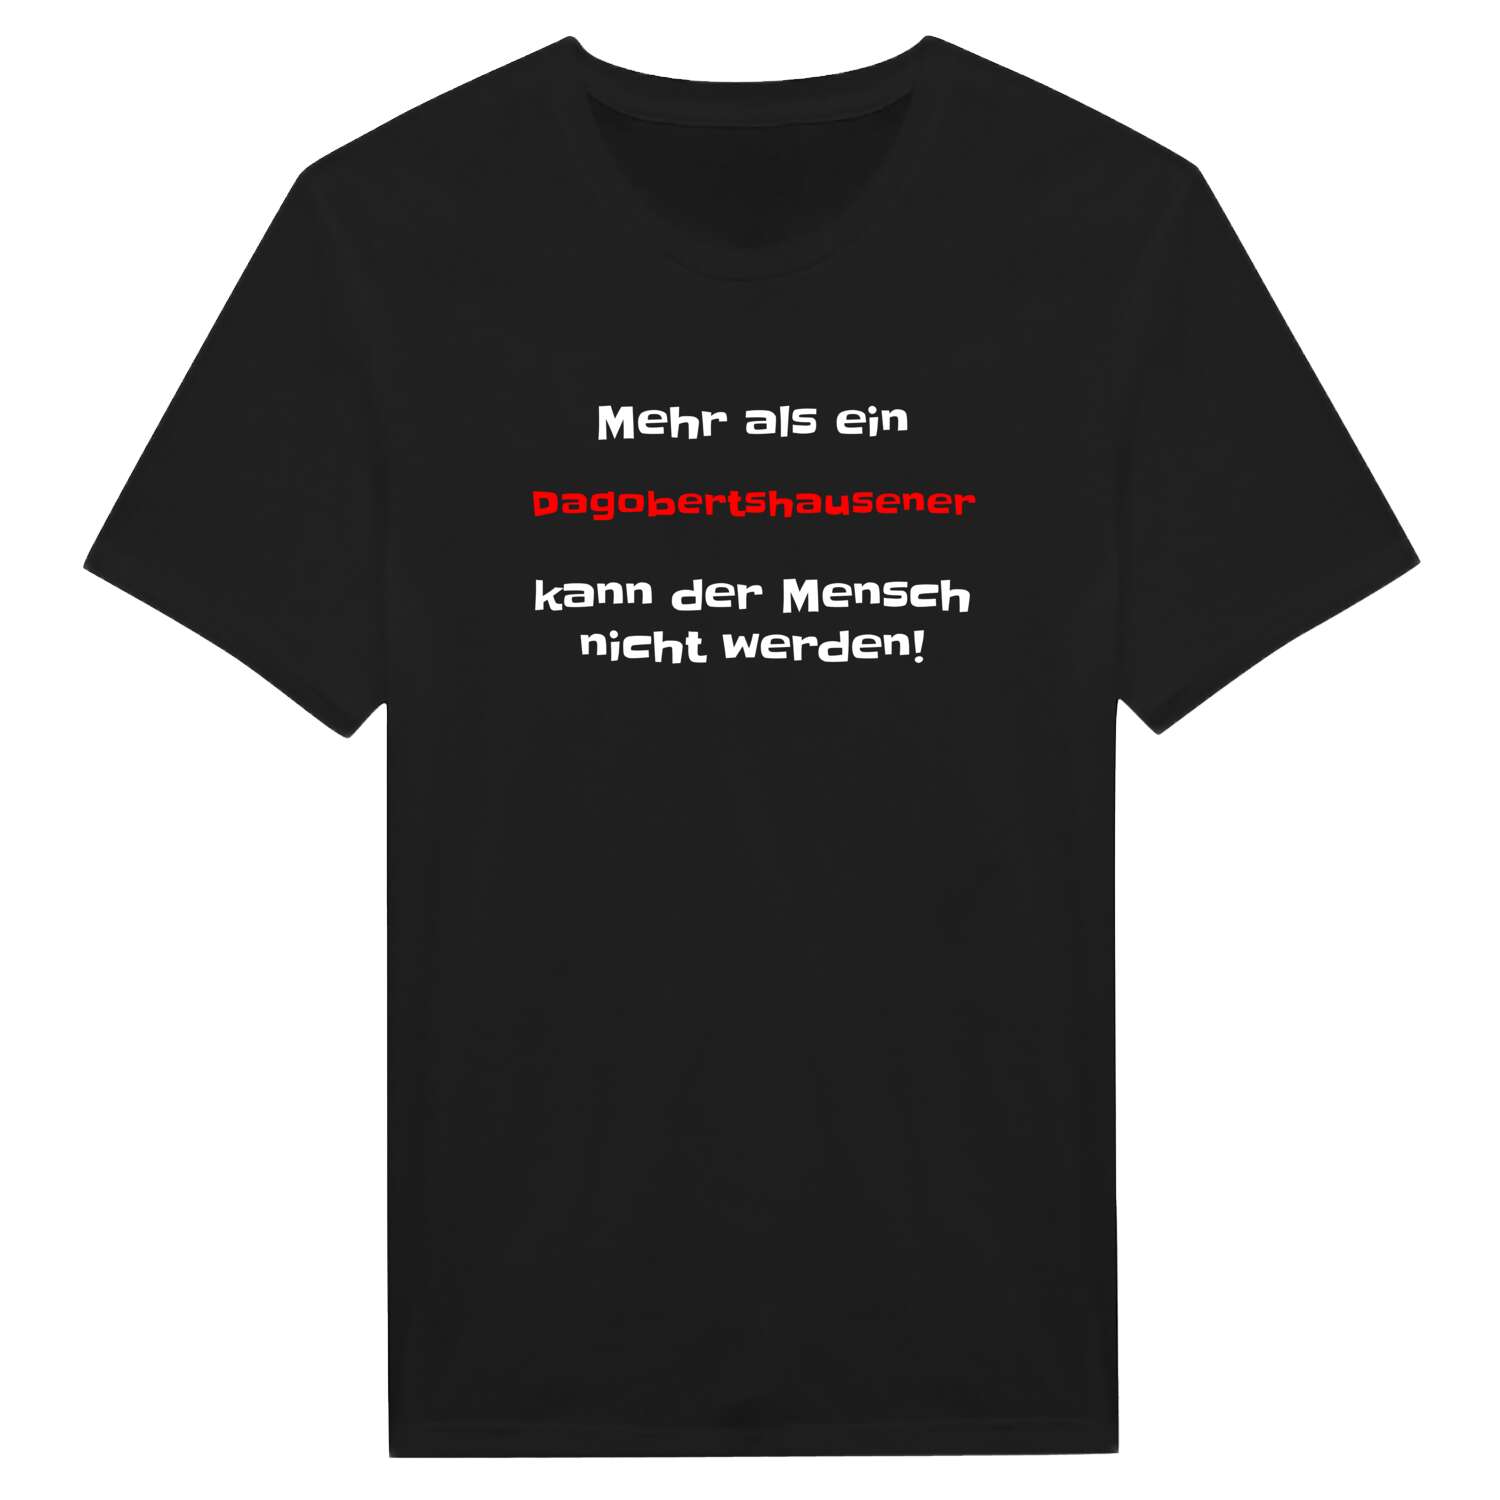 Dagobertshausen T-Shirt »Mehr als ein«